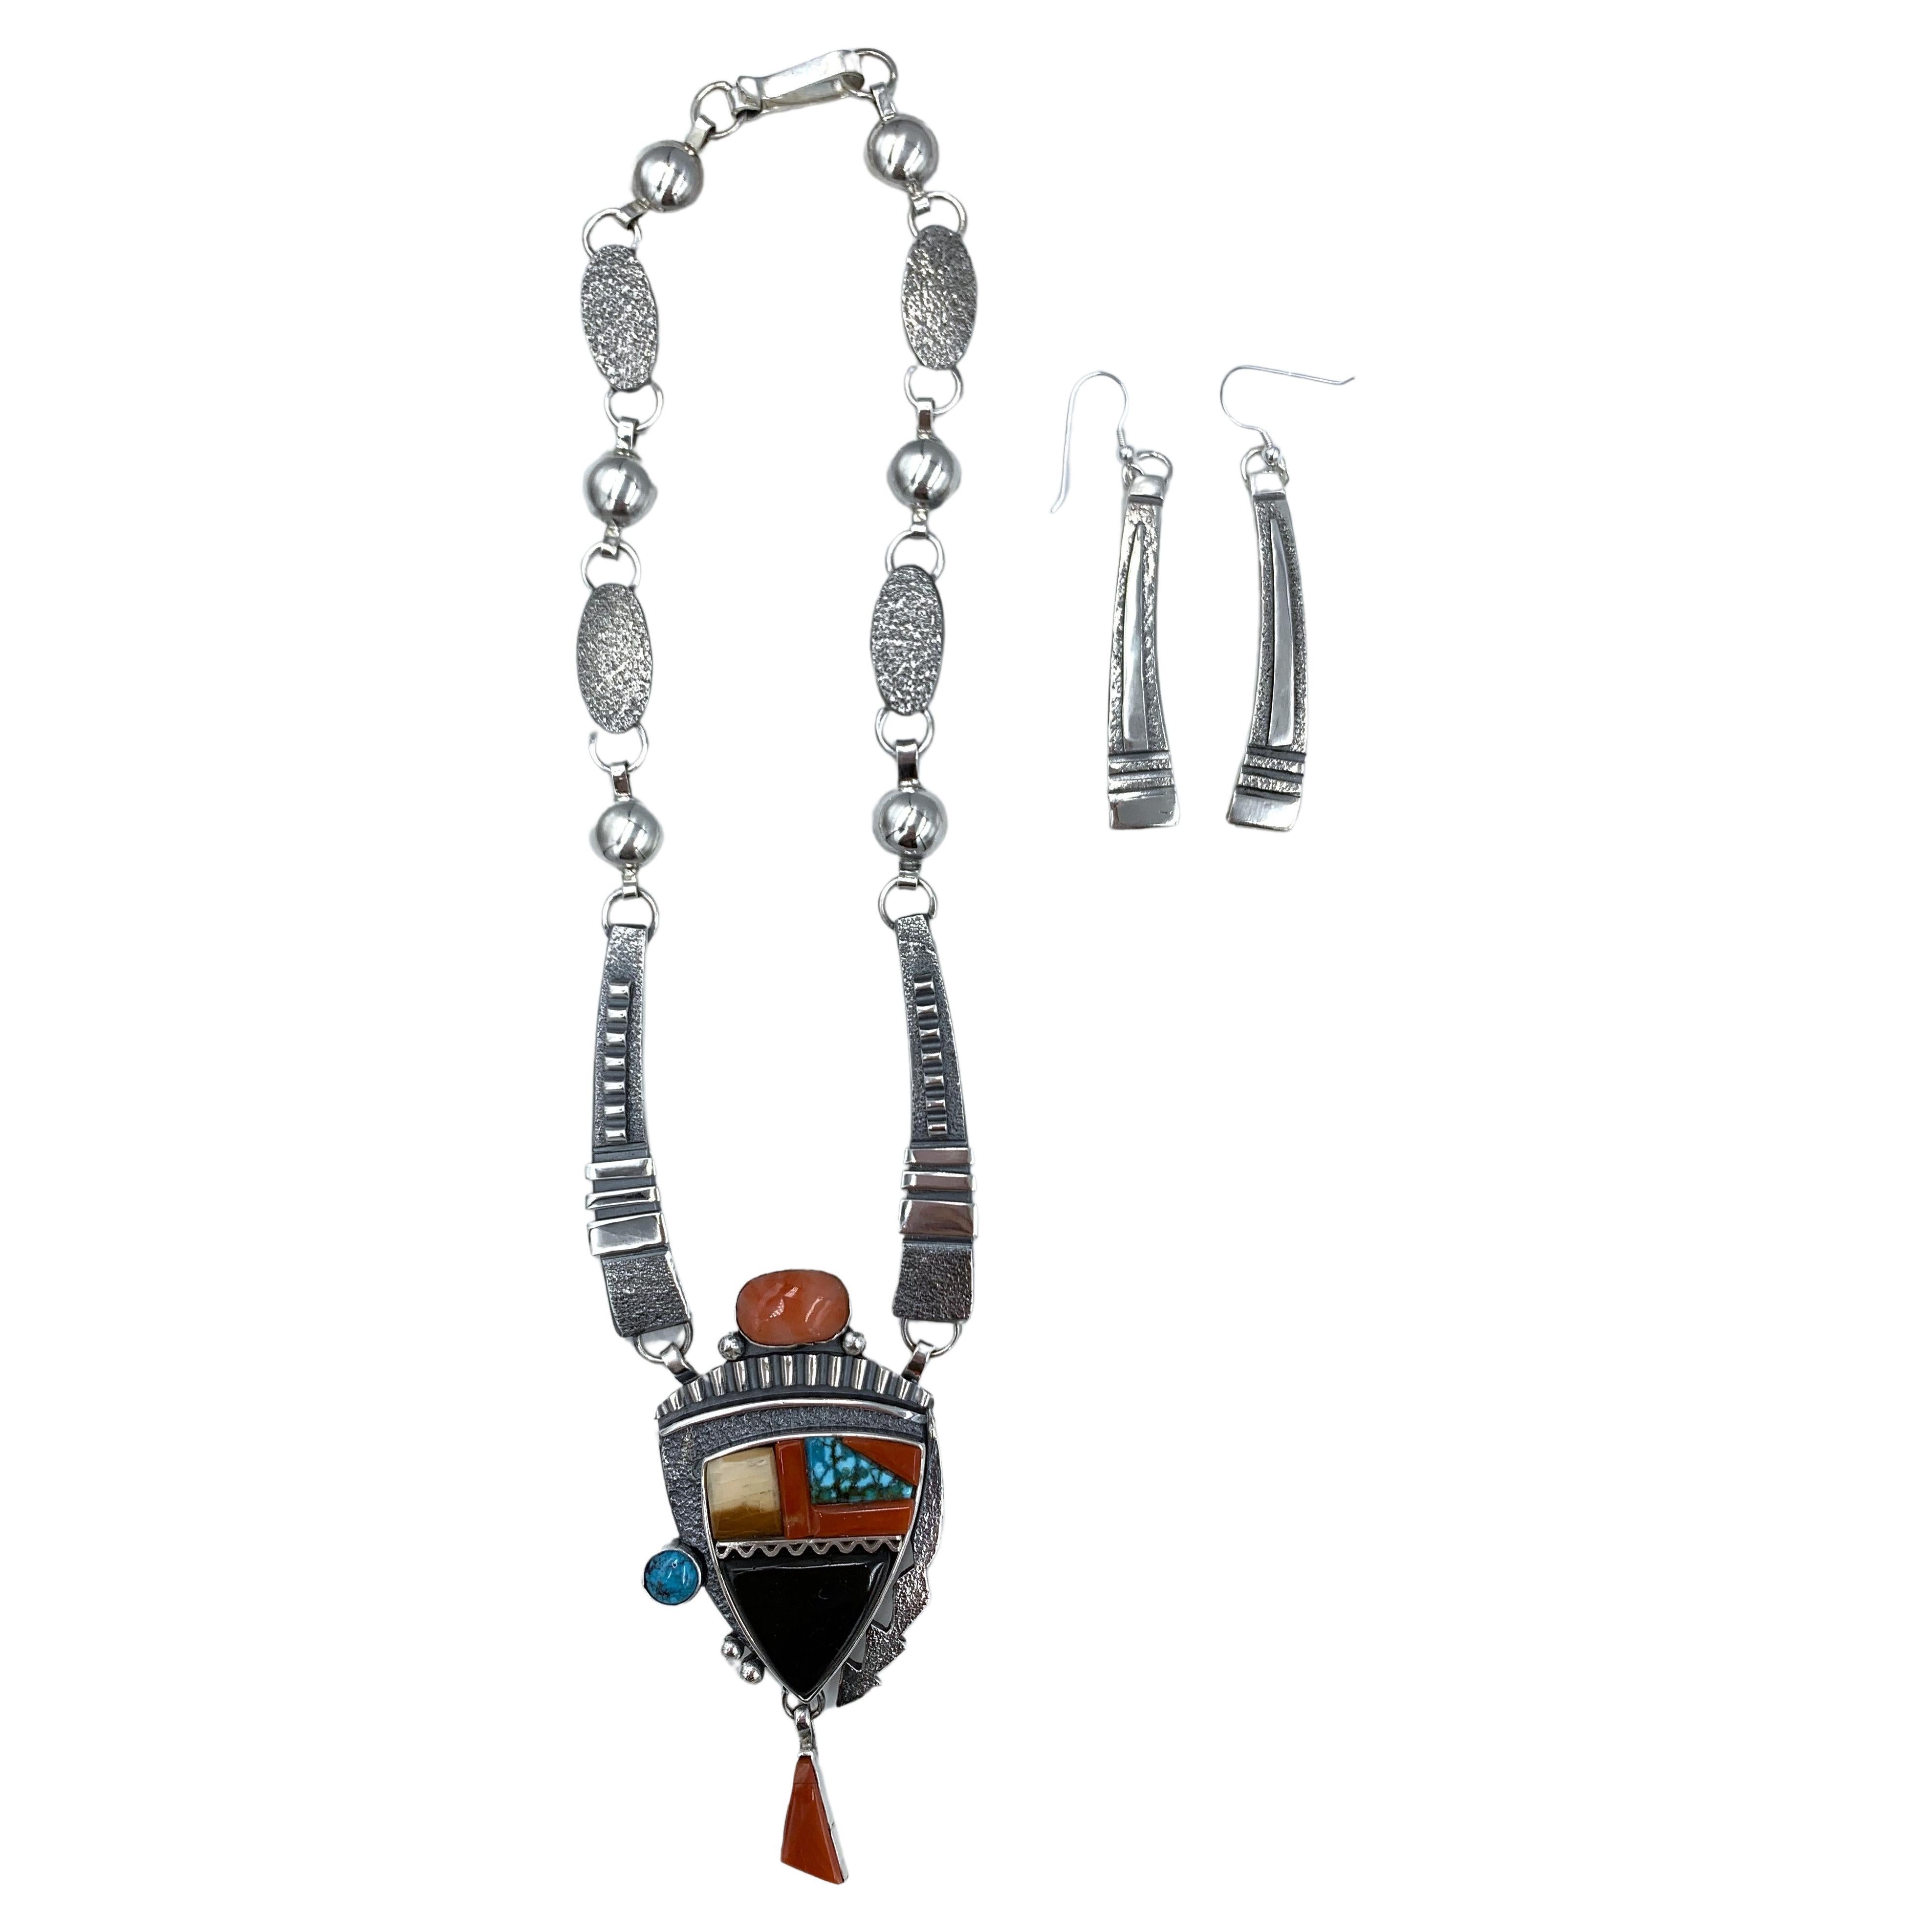 Halskette und Ohrringe aus Sterlingsilber und Intarsien des Navajo-Silberschmieds Jack Tom. Der Anhänger besteht aus Türkis, Jett, Jaspis, Koralle und Austern.

Toms charakteristisches Design ist schlank und elegant mit raffinierten oxidierten